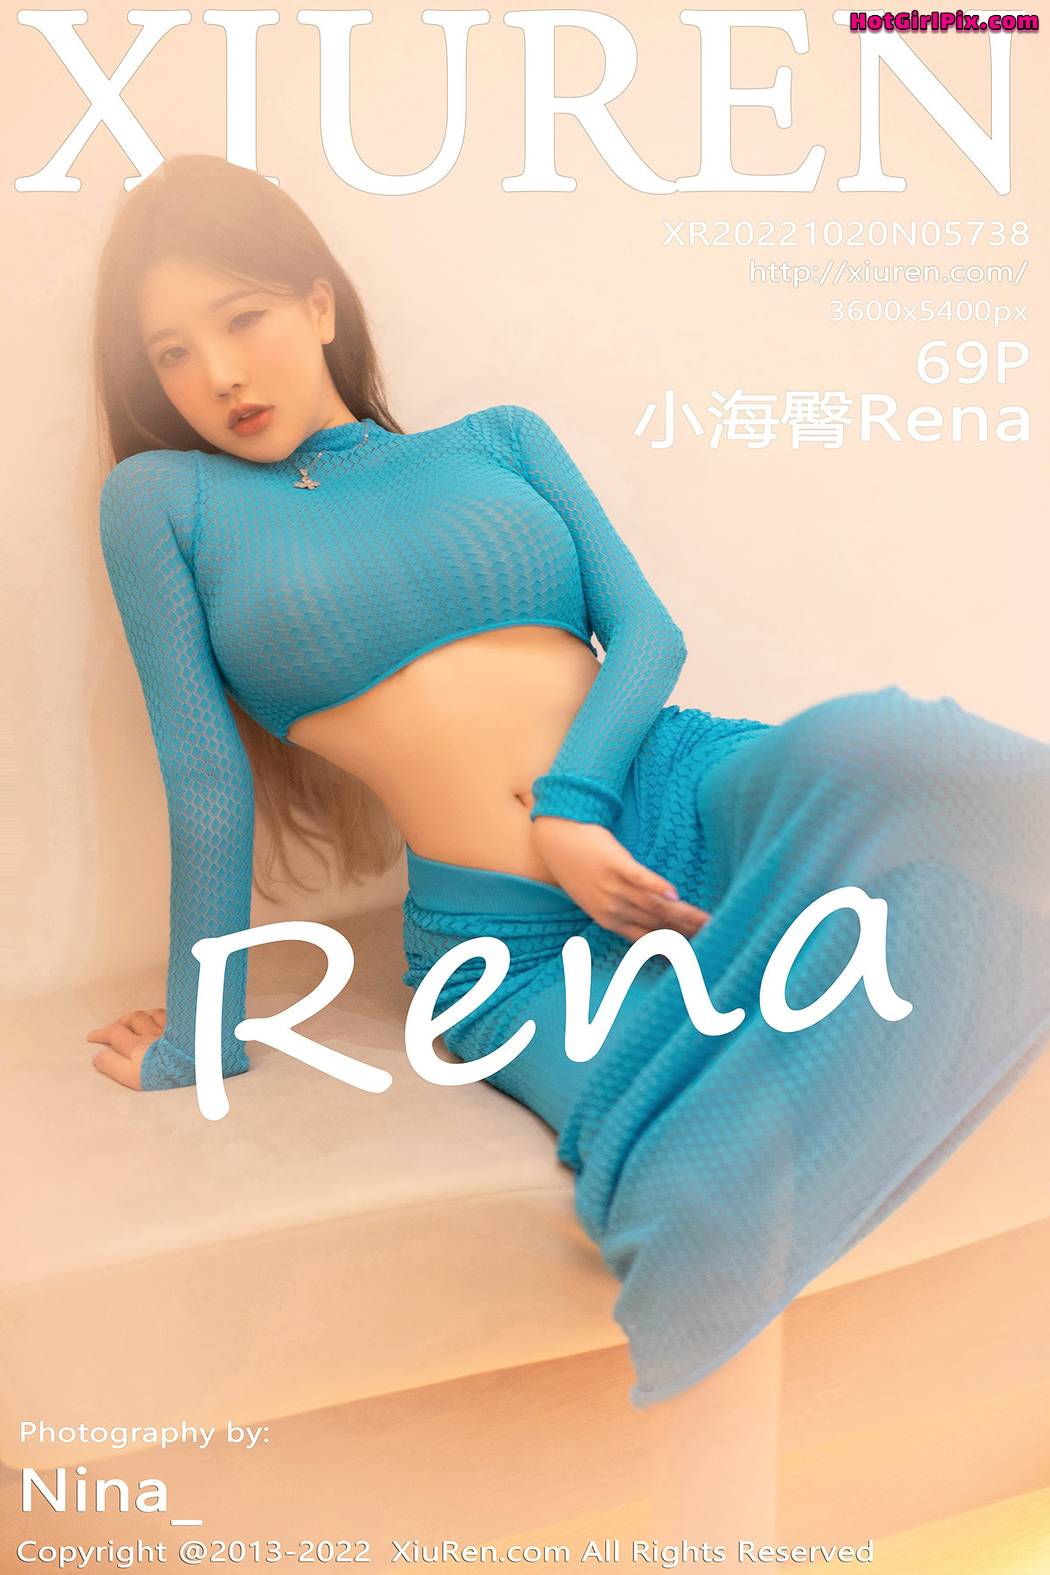 [XIUREN] No.5738 小海臀Rena Cover Photo